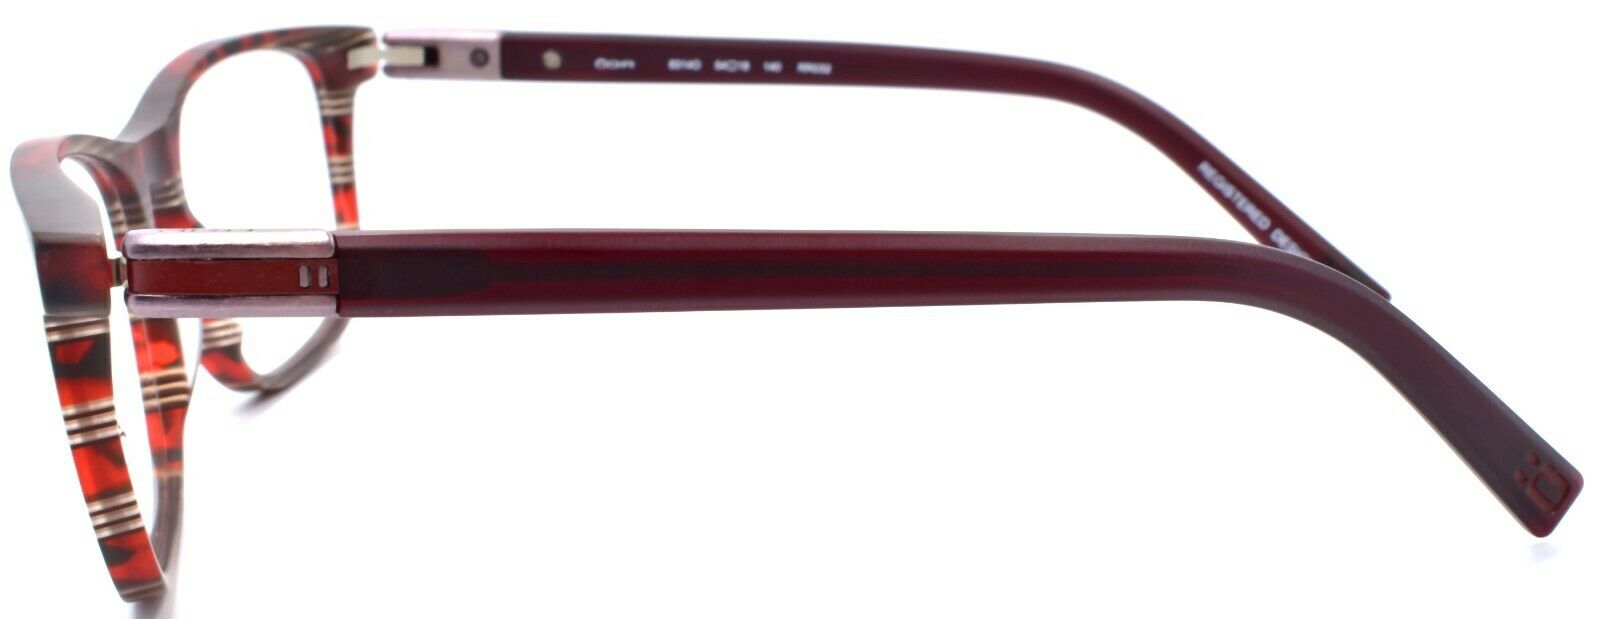 3-OGA by Morel 8314O RR032 Men's Eyeglasses Frames 54-18-140 Dark Red-3604770905724-IKSpecs